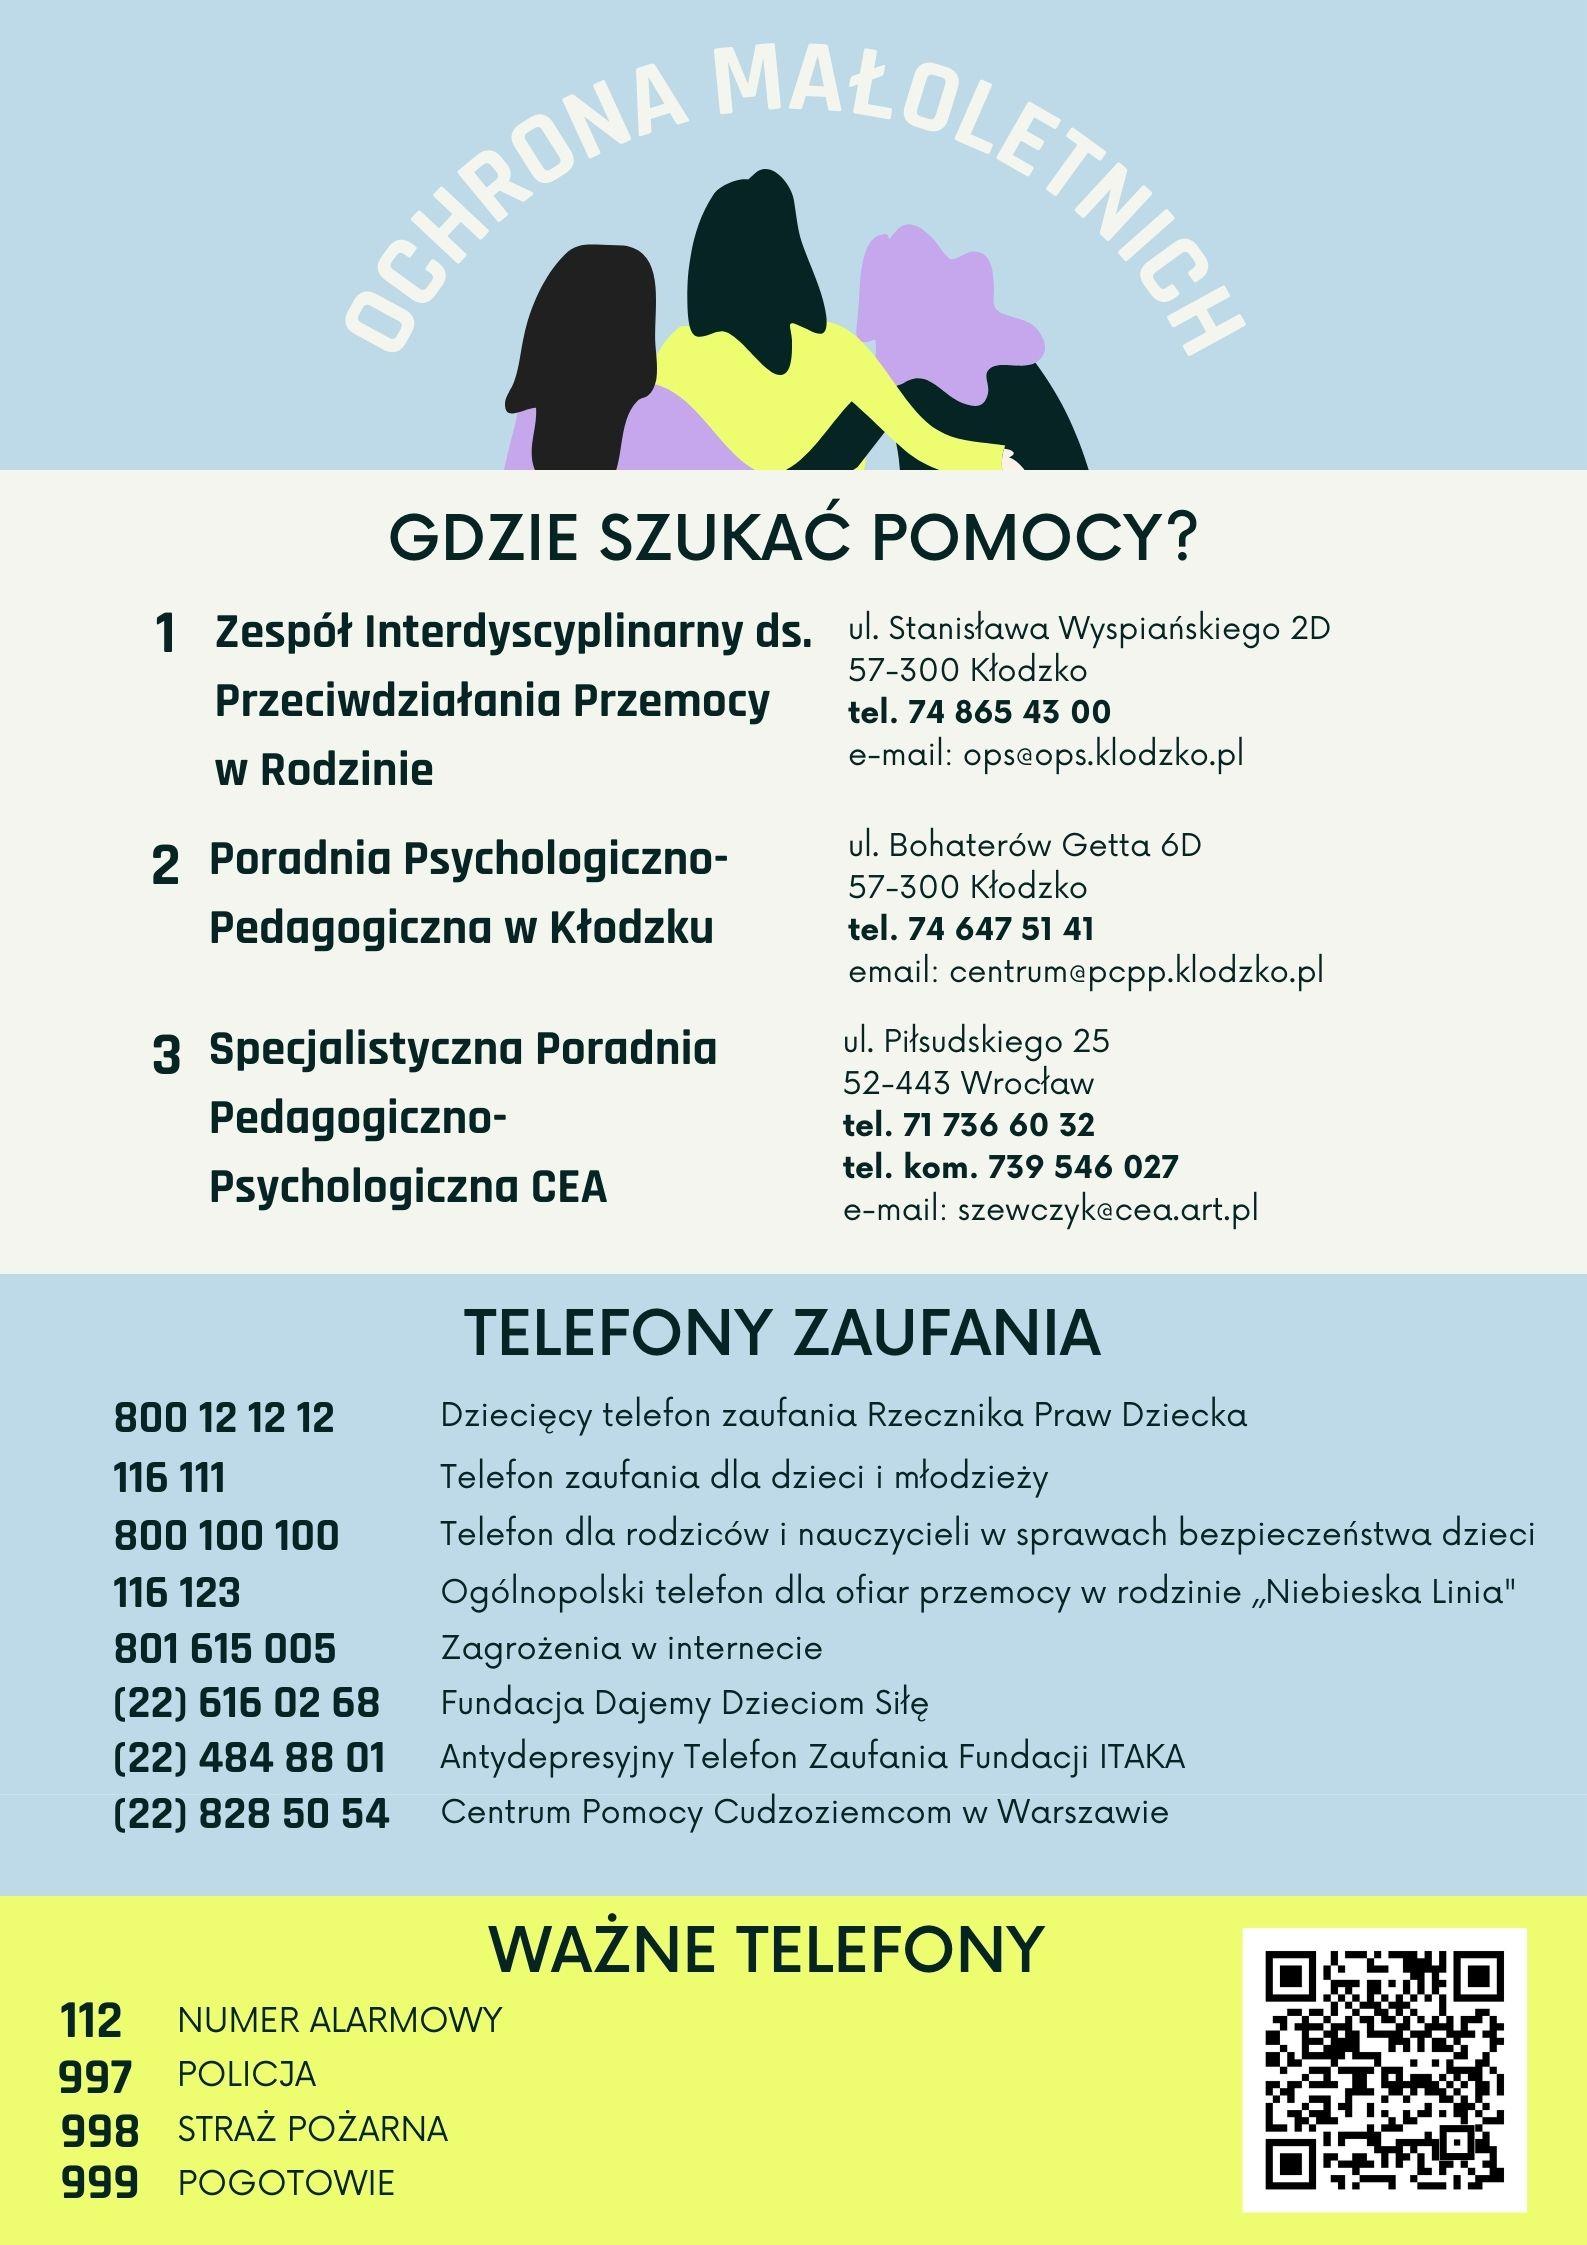 Plakat na kolorowym tle z informacją tekstową dotyczącą Standardy Ochrony Małoletnich wraz adresami i telefonami dot. pomocy dla małoletnich